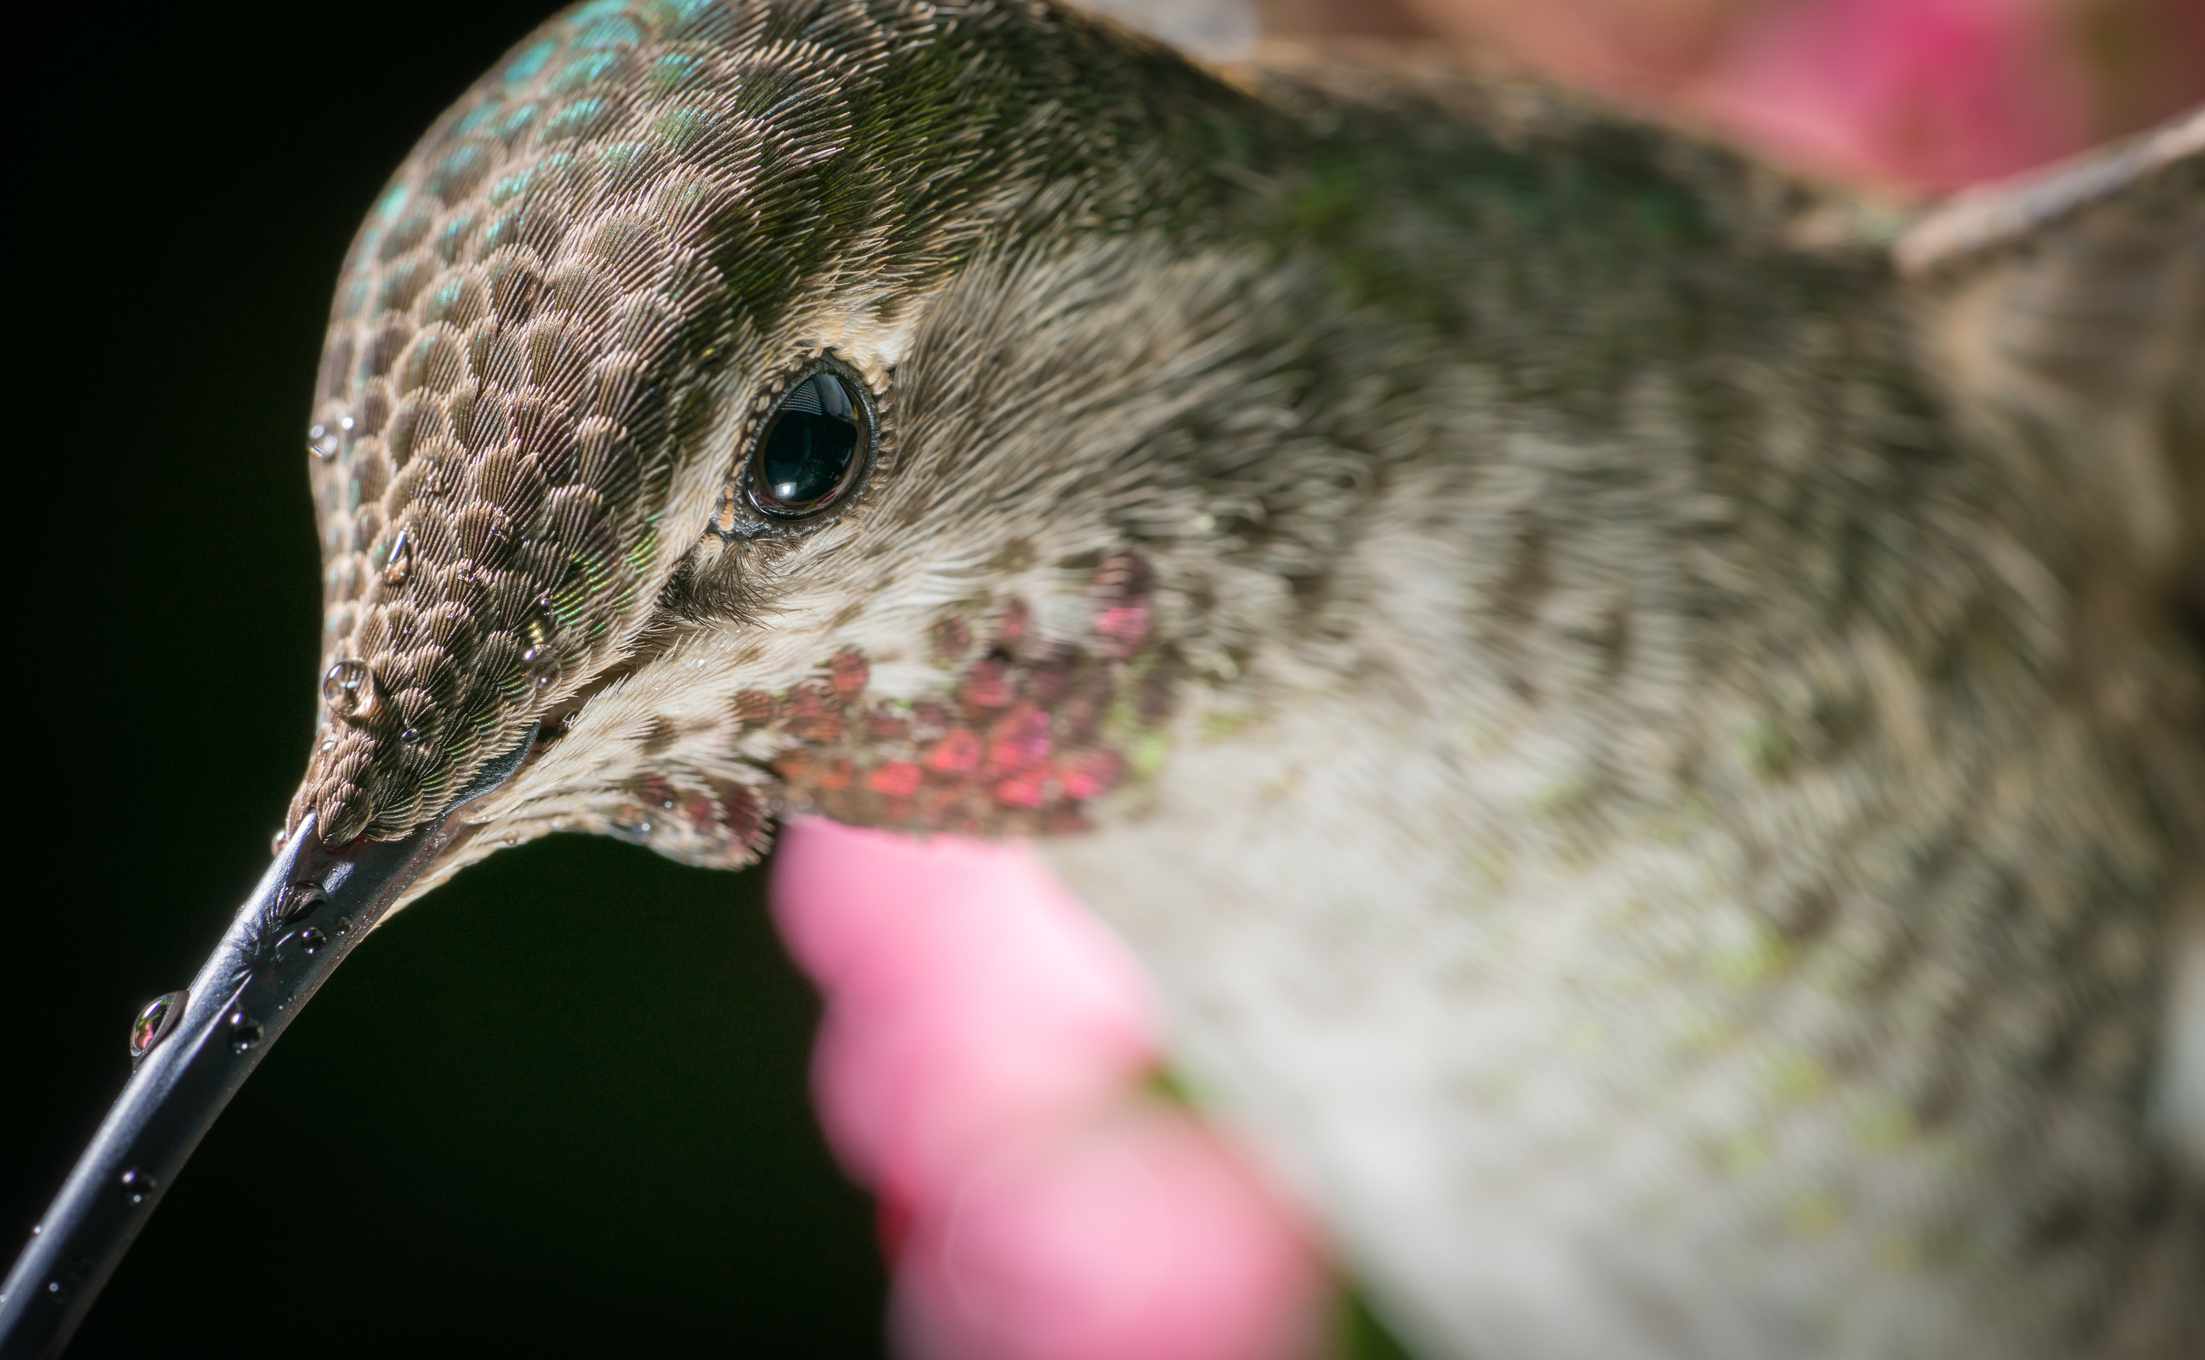 primer plano de un colibrí de color apagado con pequeñas plumas visibles como pestañas alrededor del ojo